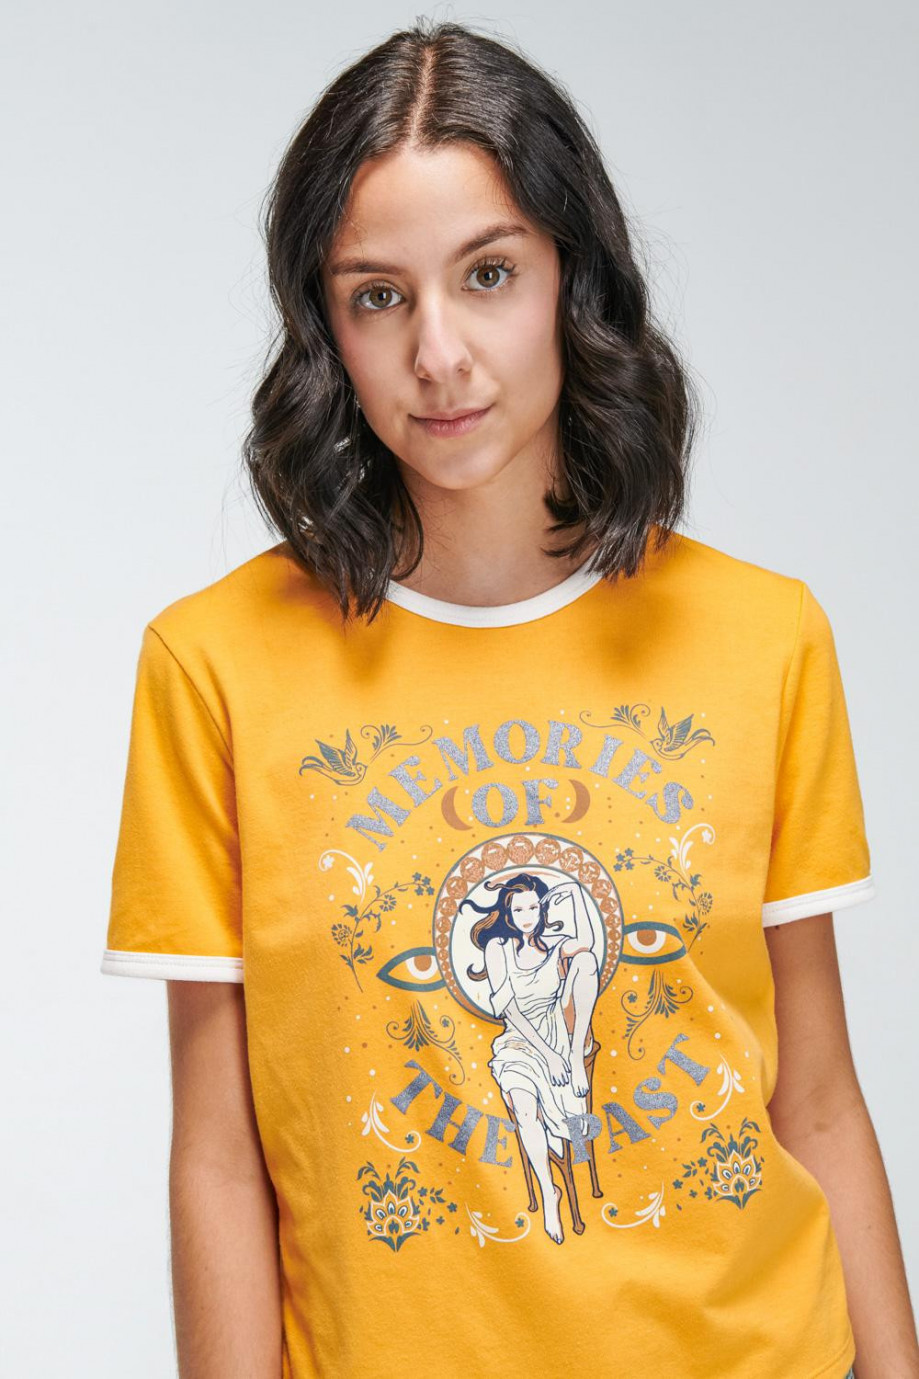 Camiseta unicolor manga corta con estampado y contrastes